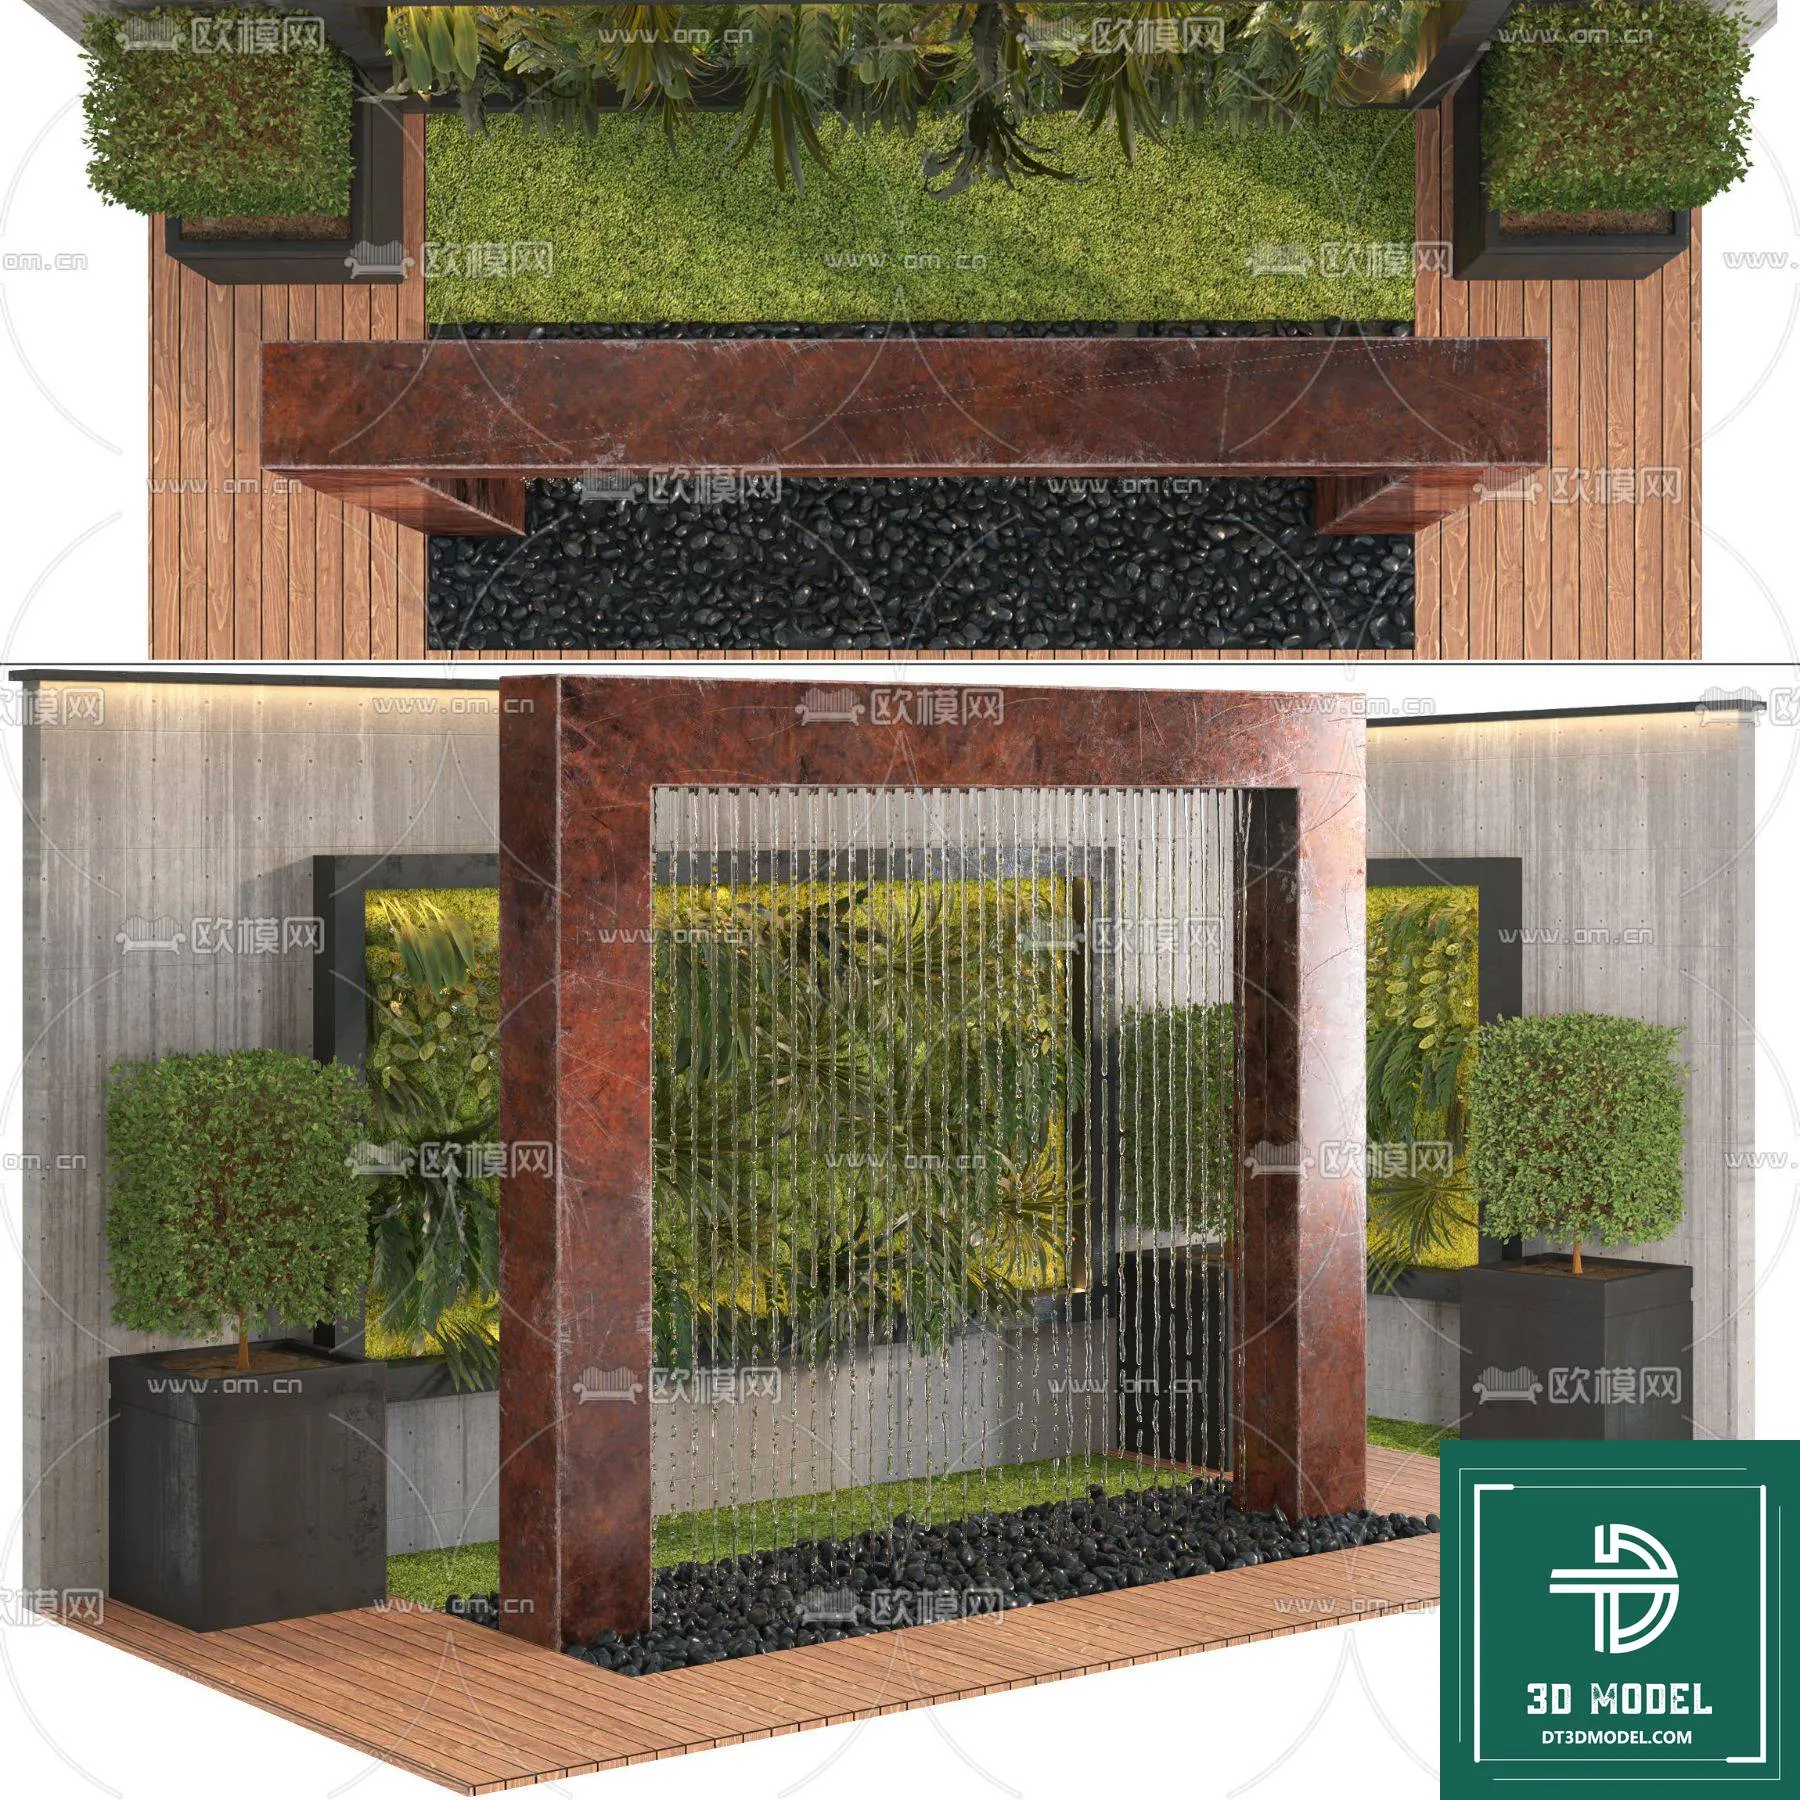 VERTICAL GARDEN – FITOWALL PLANT 3D MODEL – 087